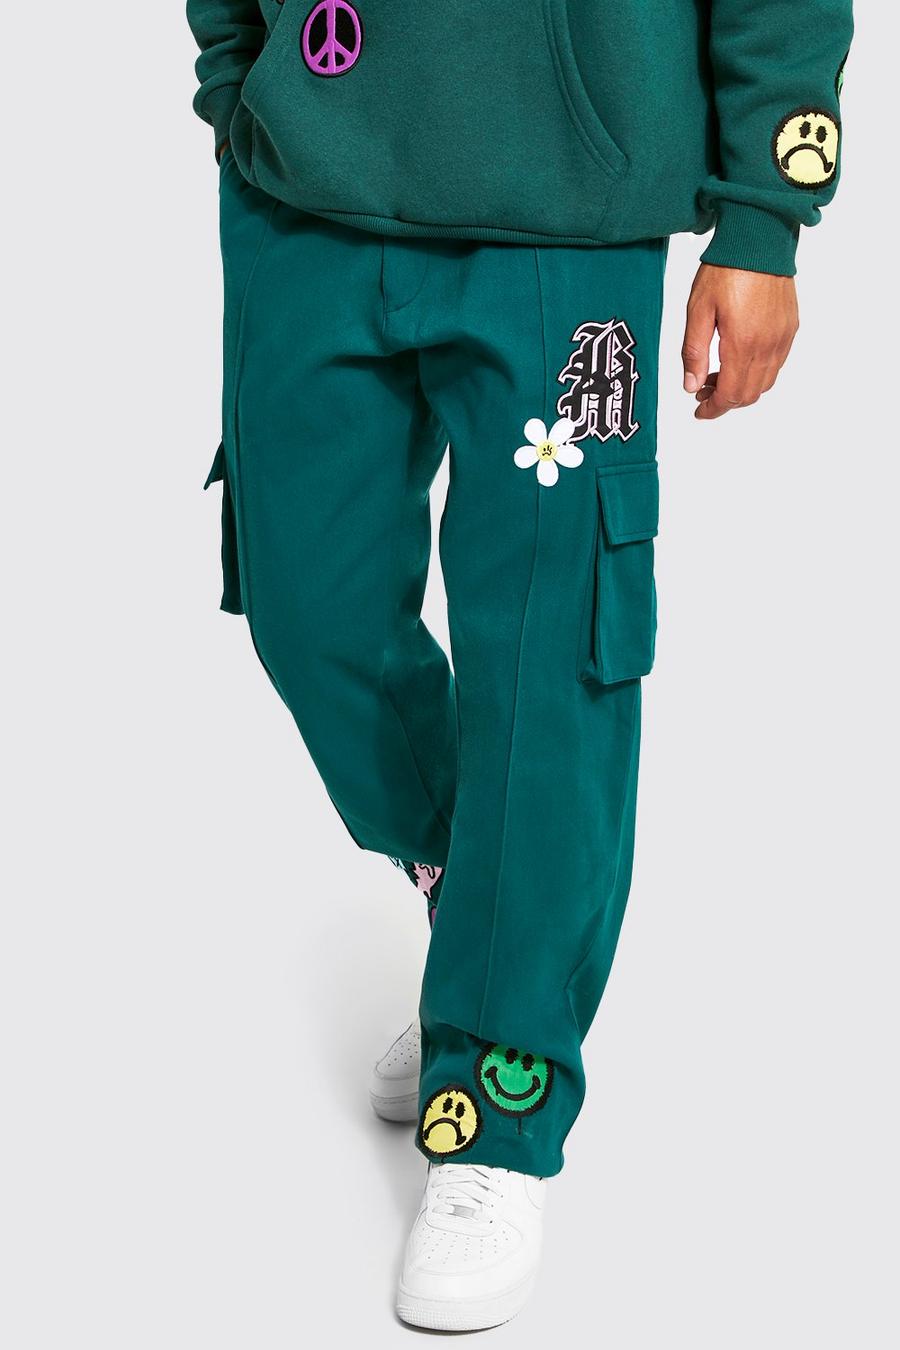 ירוק כהה מכנסי דגמ"ח בגזרת רגל ישרה עם אפליקציה, לגברים גבוהים image number 1